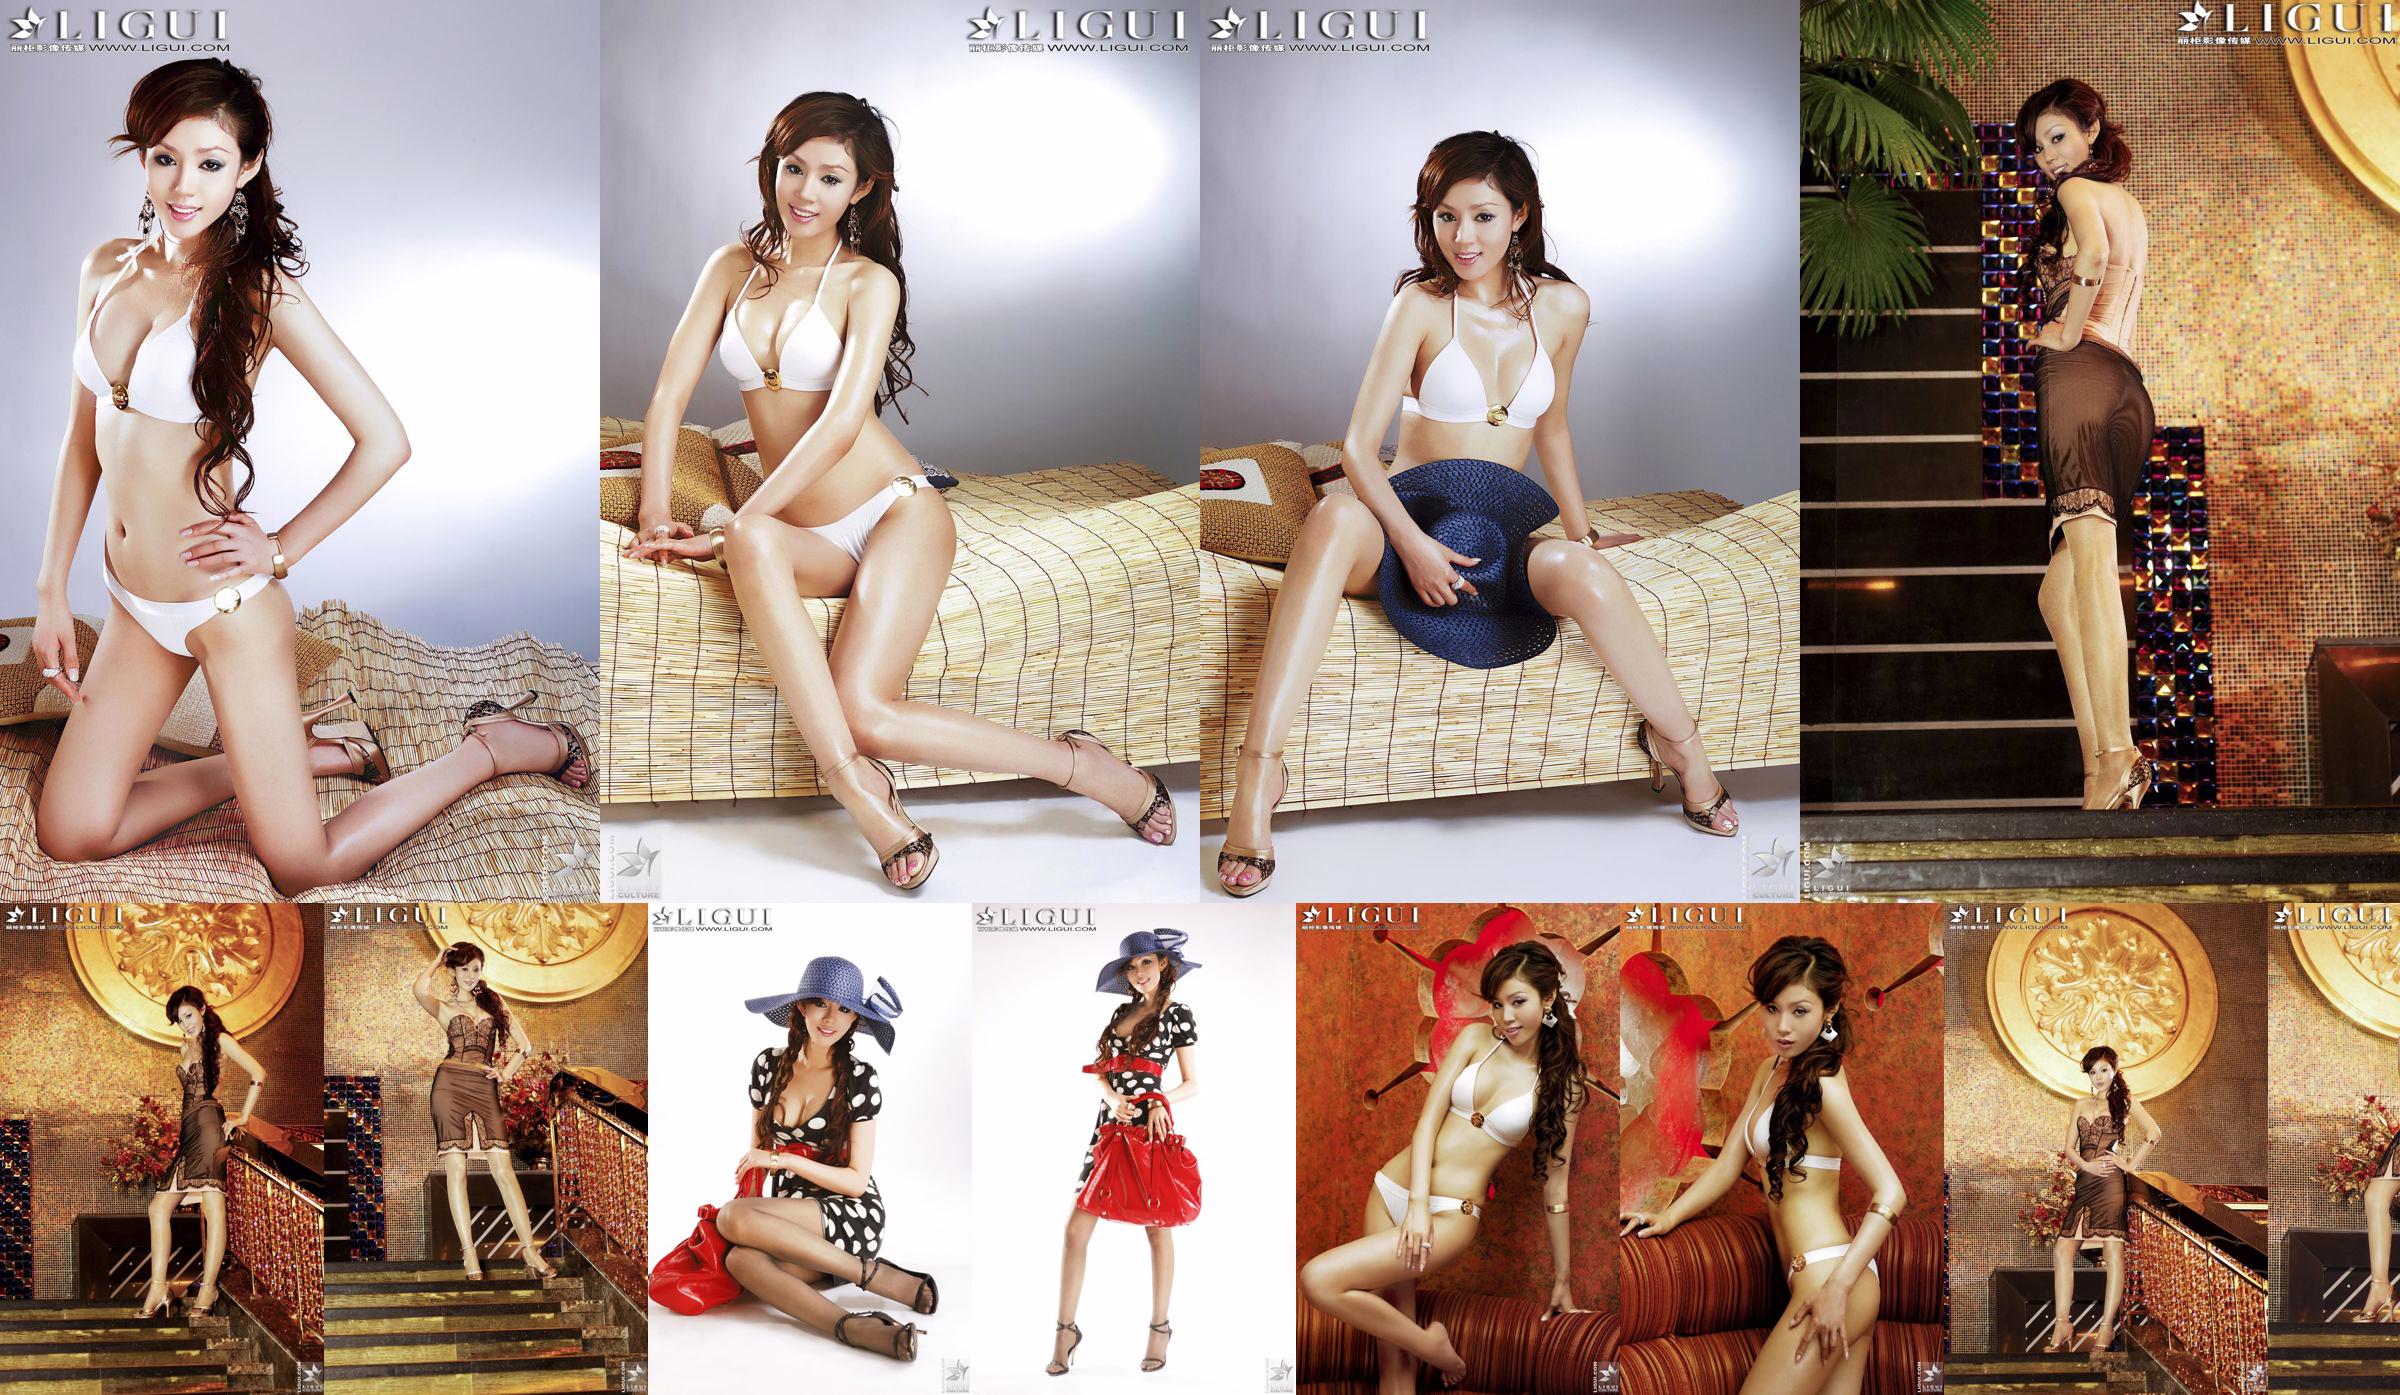 [丽 柜 LiGui] Foto "Bikini + vestito" della modella Yao Jinjin Gambe bellissime e piedi setosi No.699318 Pagina 1